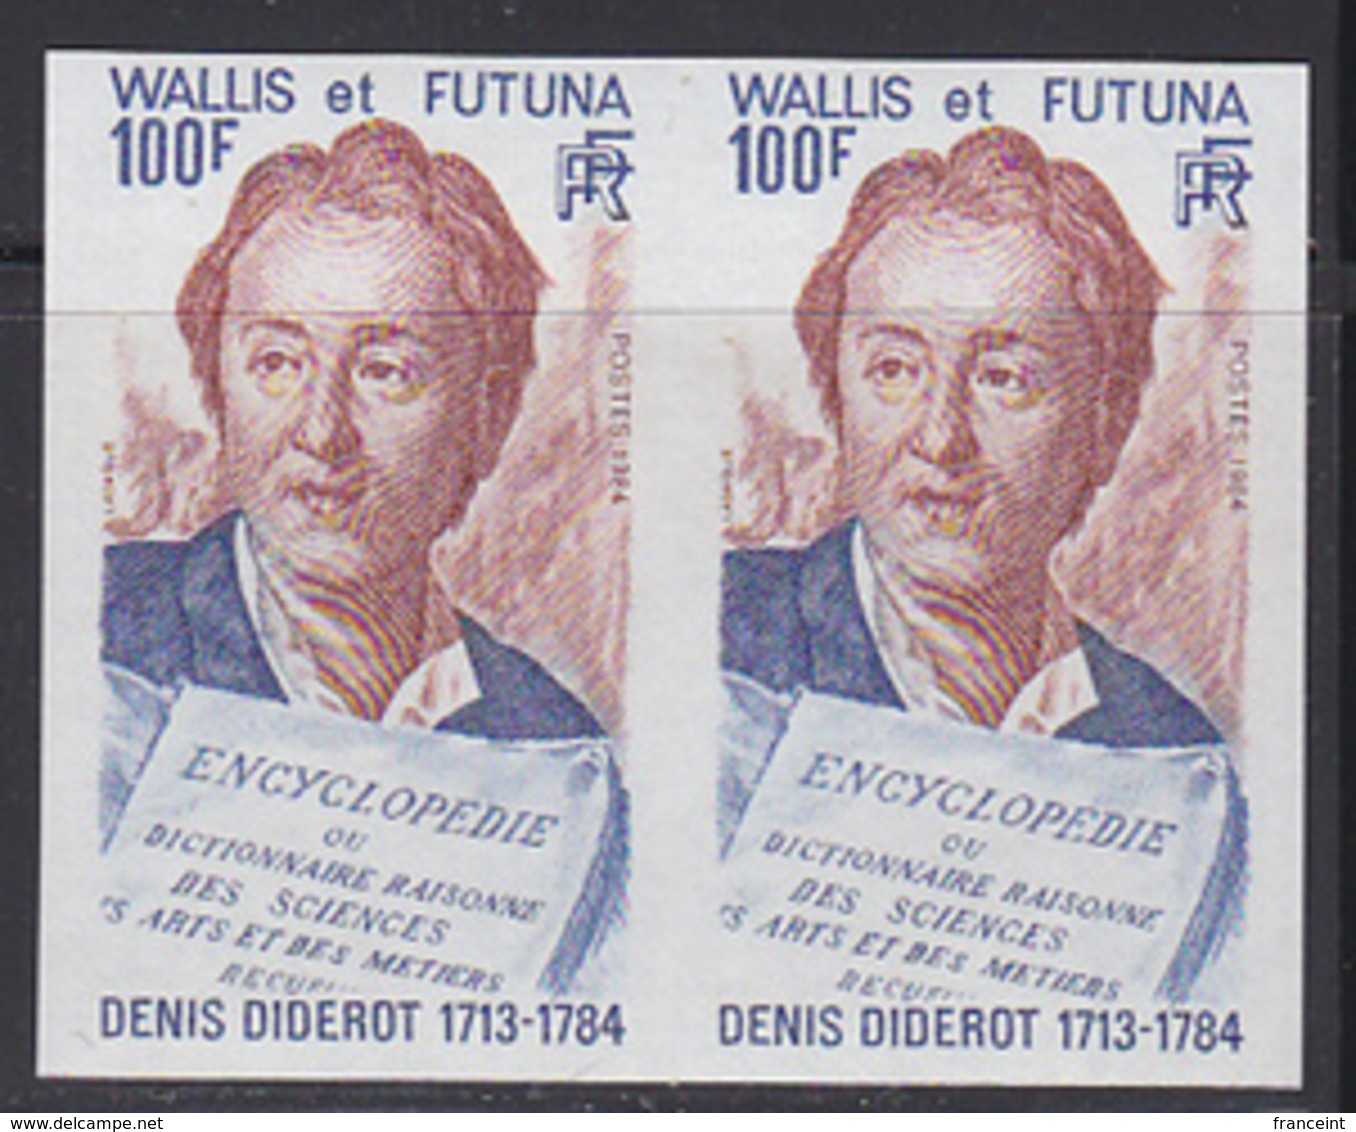 WALLIS & FUTUNA (1984) Diderot. Page Of Encyclopedia. Imperforate Pair. Scott No 316, Yvert No 319. - Sin Dentar, Pruebas De Impresión Y Variedades